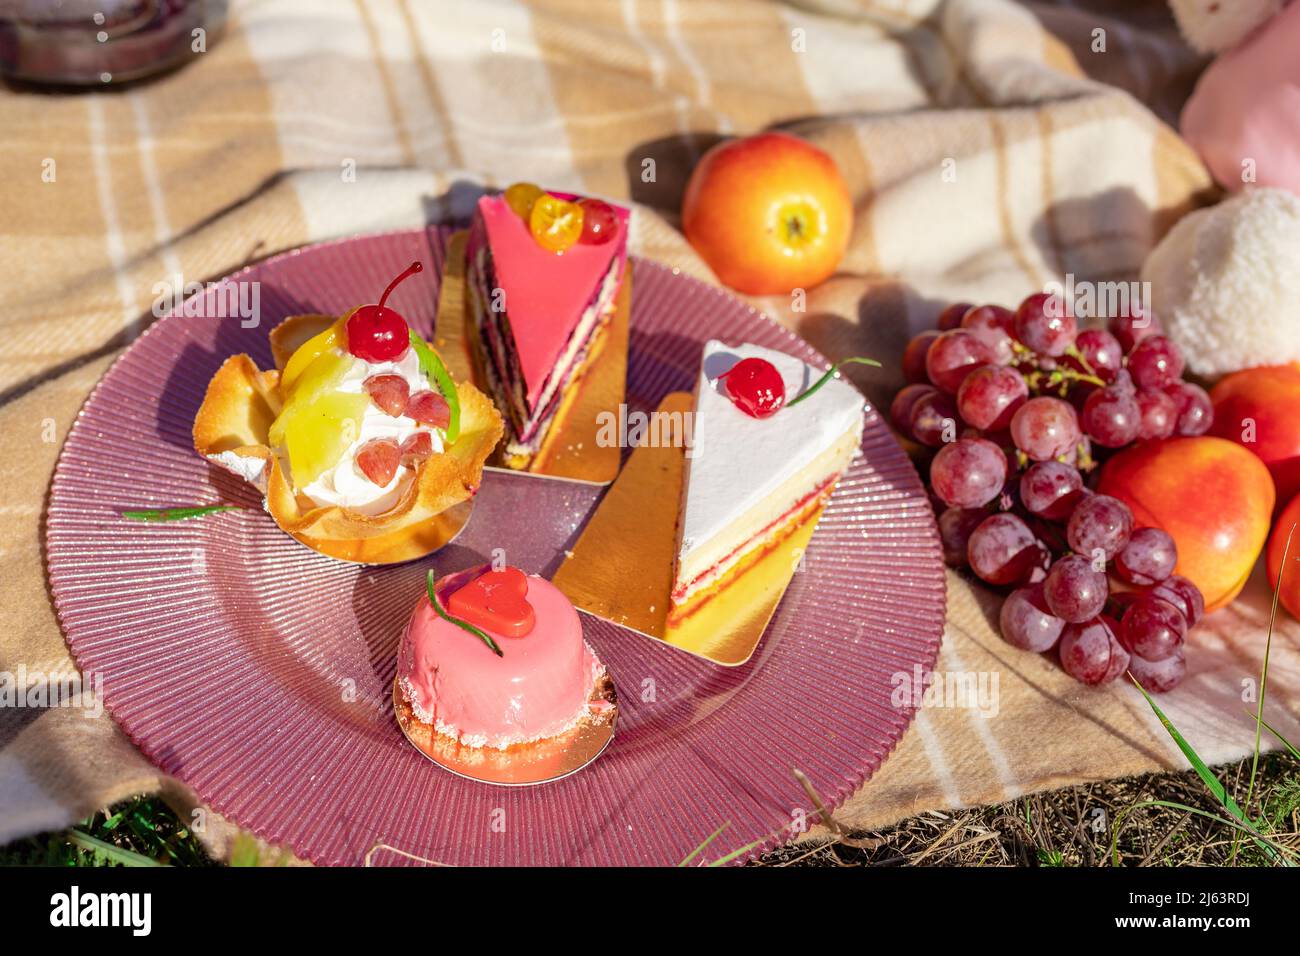 Composizione su un copriletto di dolci, uva e pesche Foto Stock